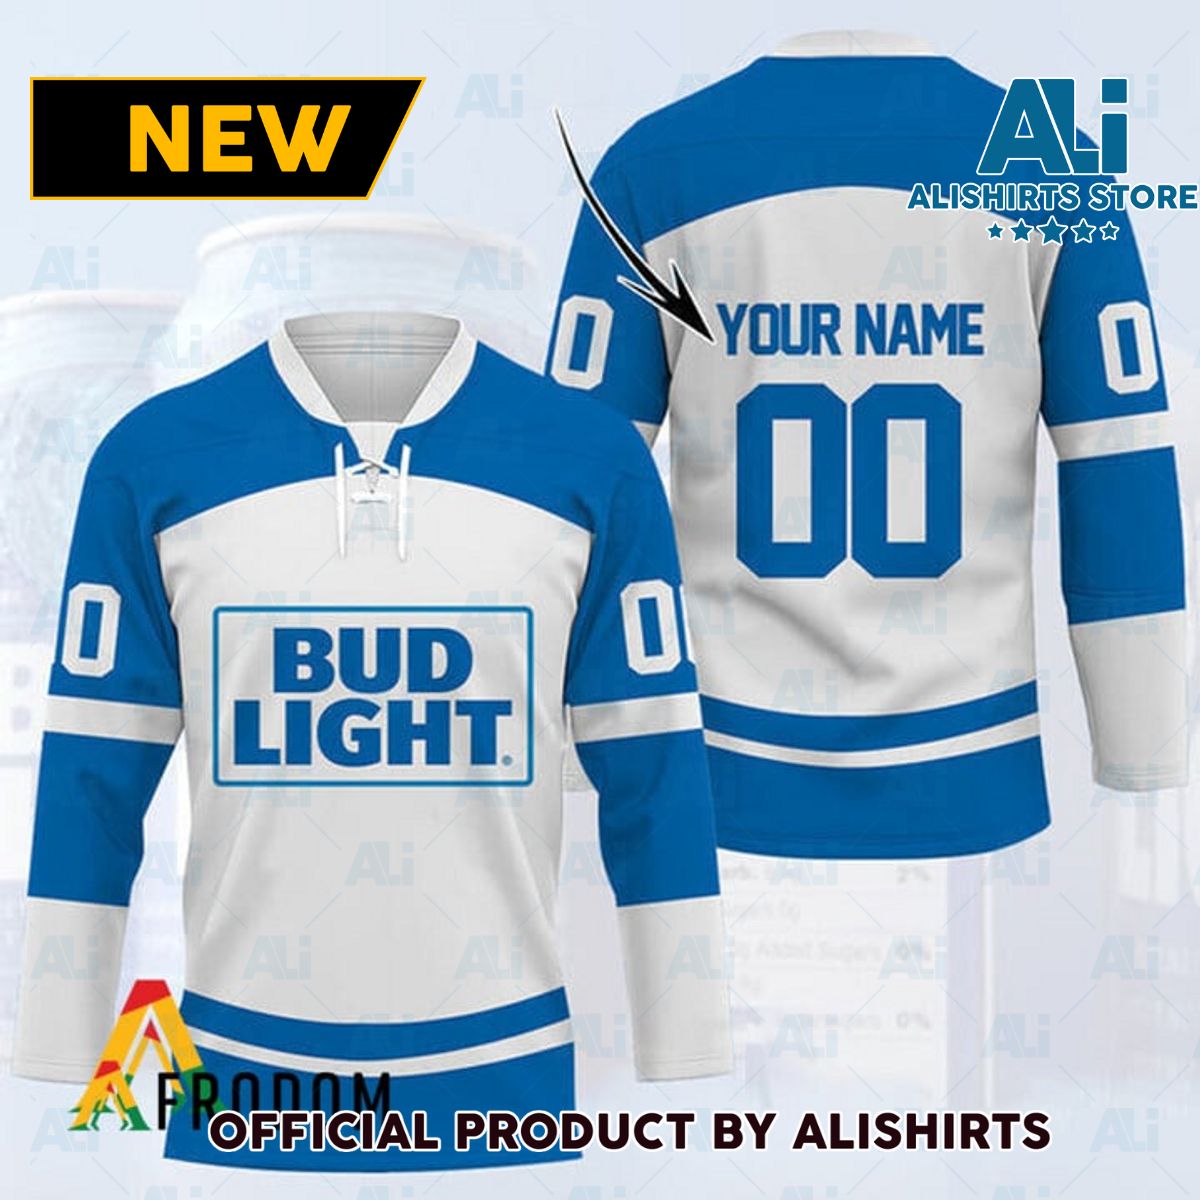 Personalized Bud Light Hockey Jersey